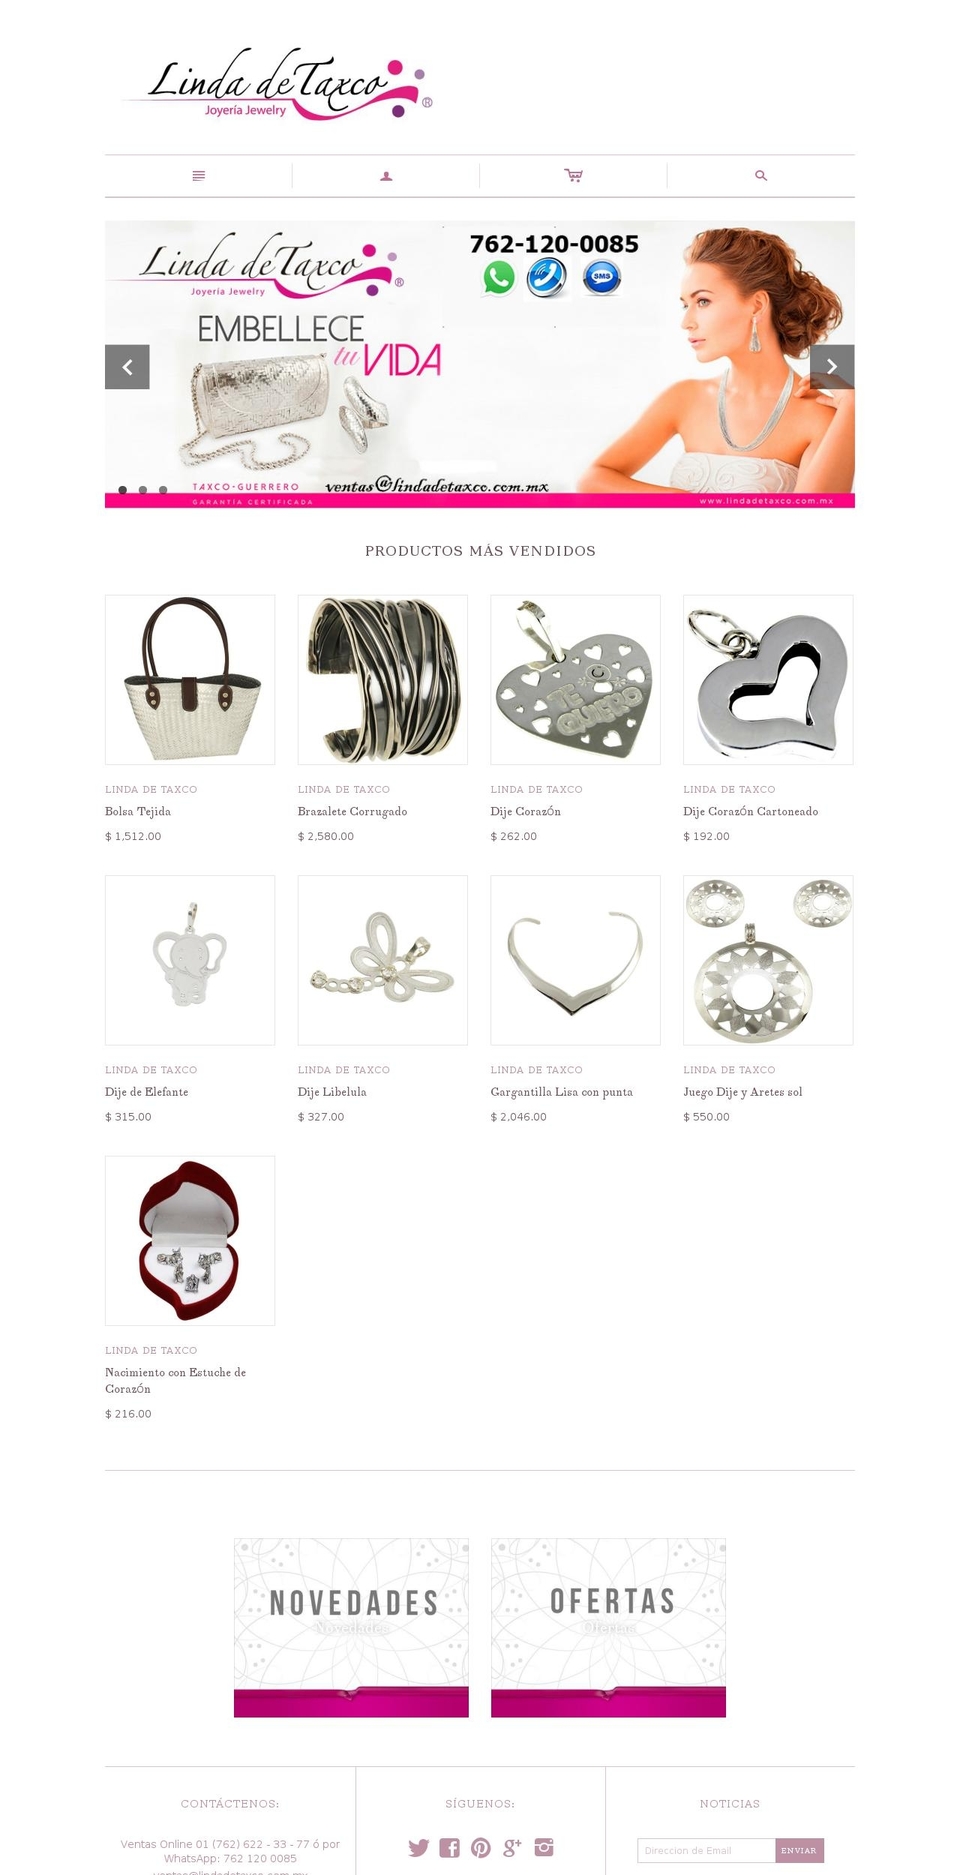 lindadetaxco.com.mx shopify website screenshot